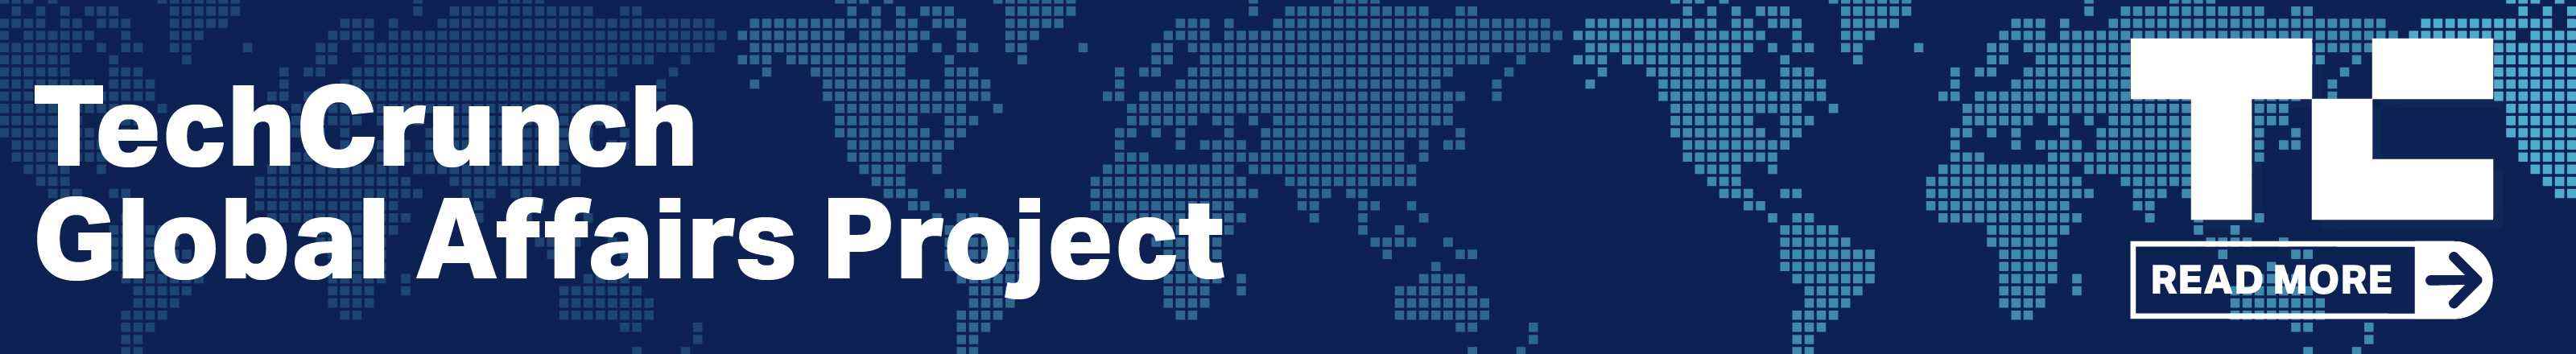 TechCrunch Küresel İlişkiler Projesi'nden daha fazlasını okuyun